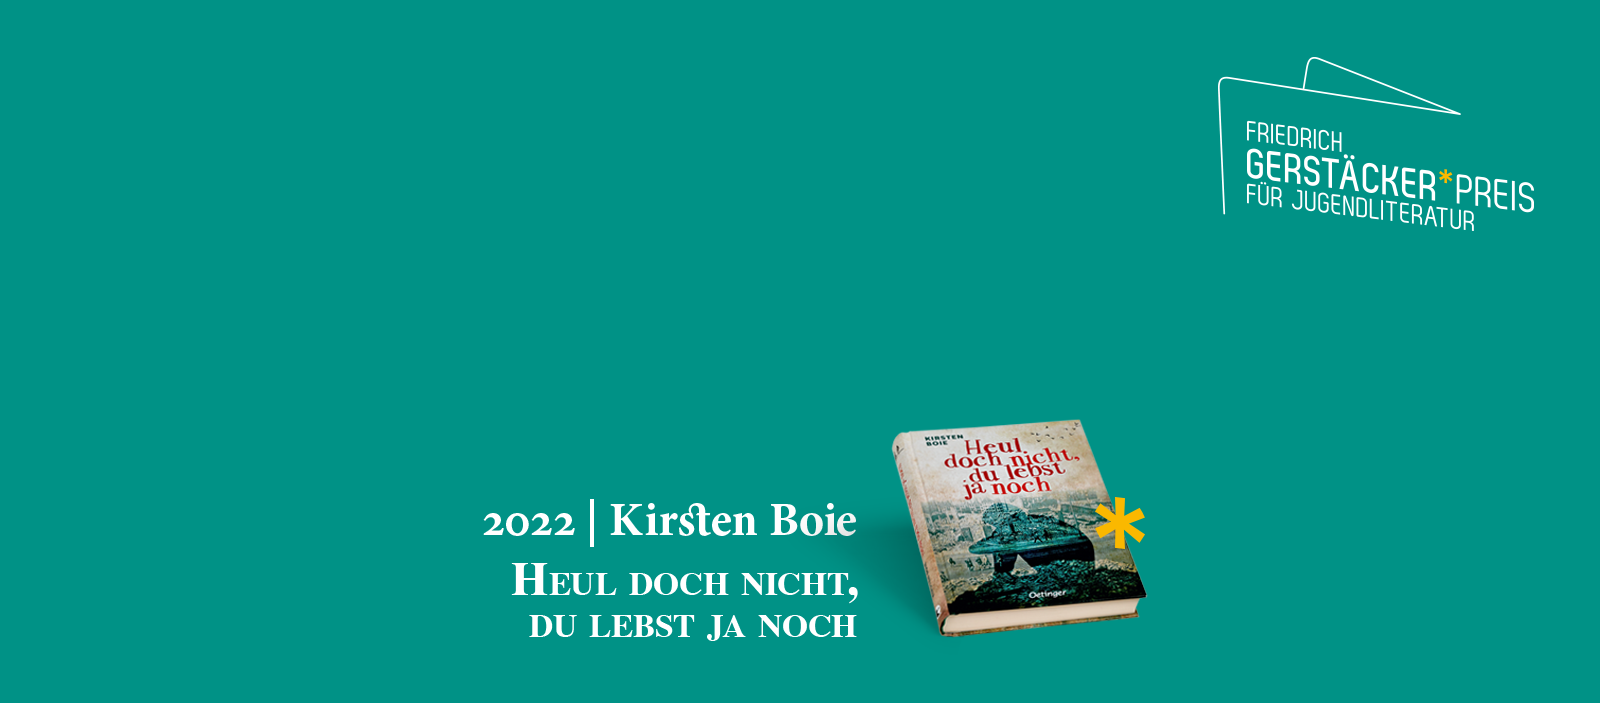 Headerbild Friedrich Gerstäcker Preis für Jugendliteratur mit Gewinner-Hinweis 2022 Kirsten Boie und dem Buch-Cover Heul doch nicht, du lebst ja noch